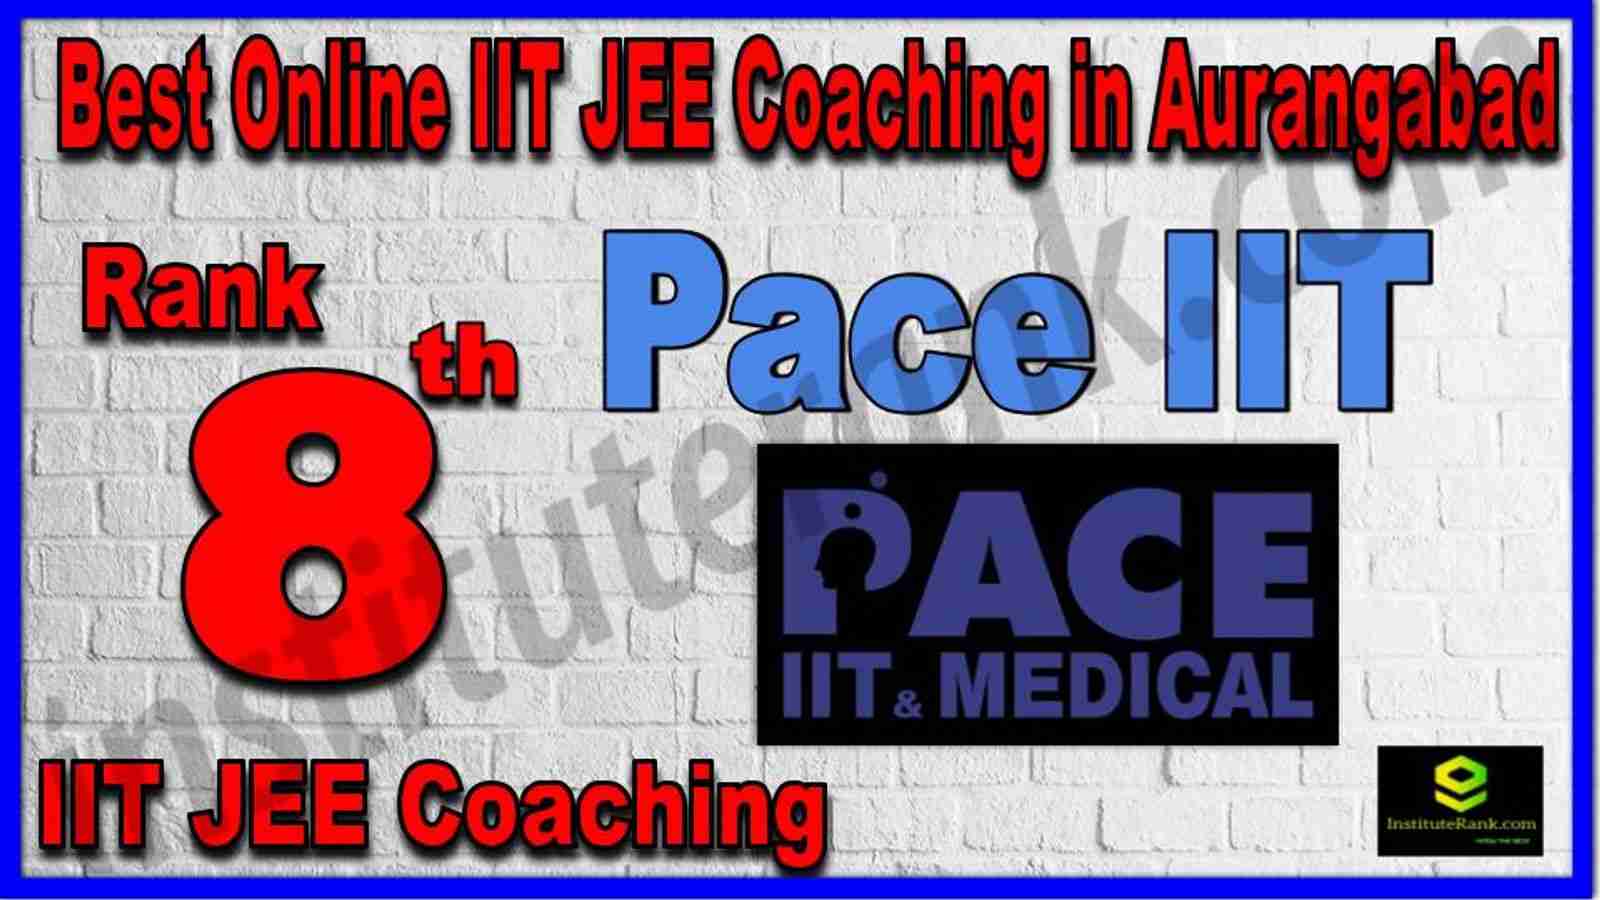 Rank 8th Best Online IIT JEE Coaching in Aurangabad